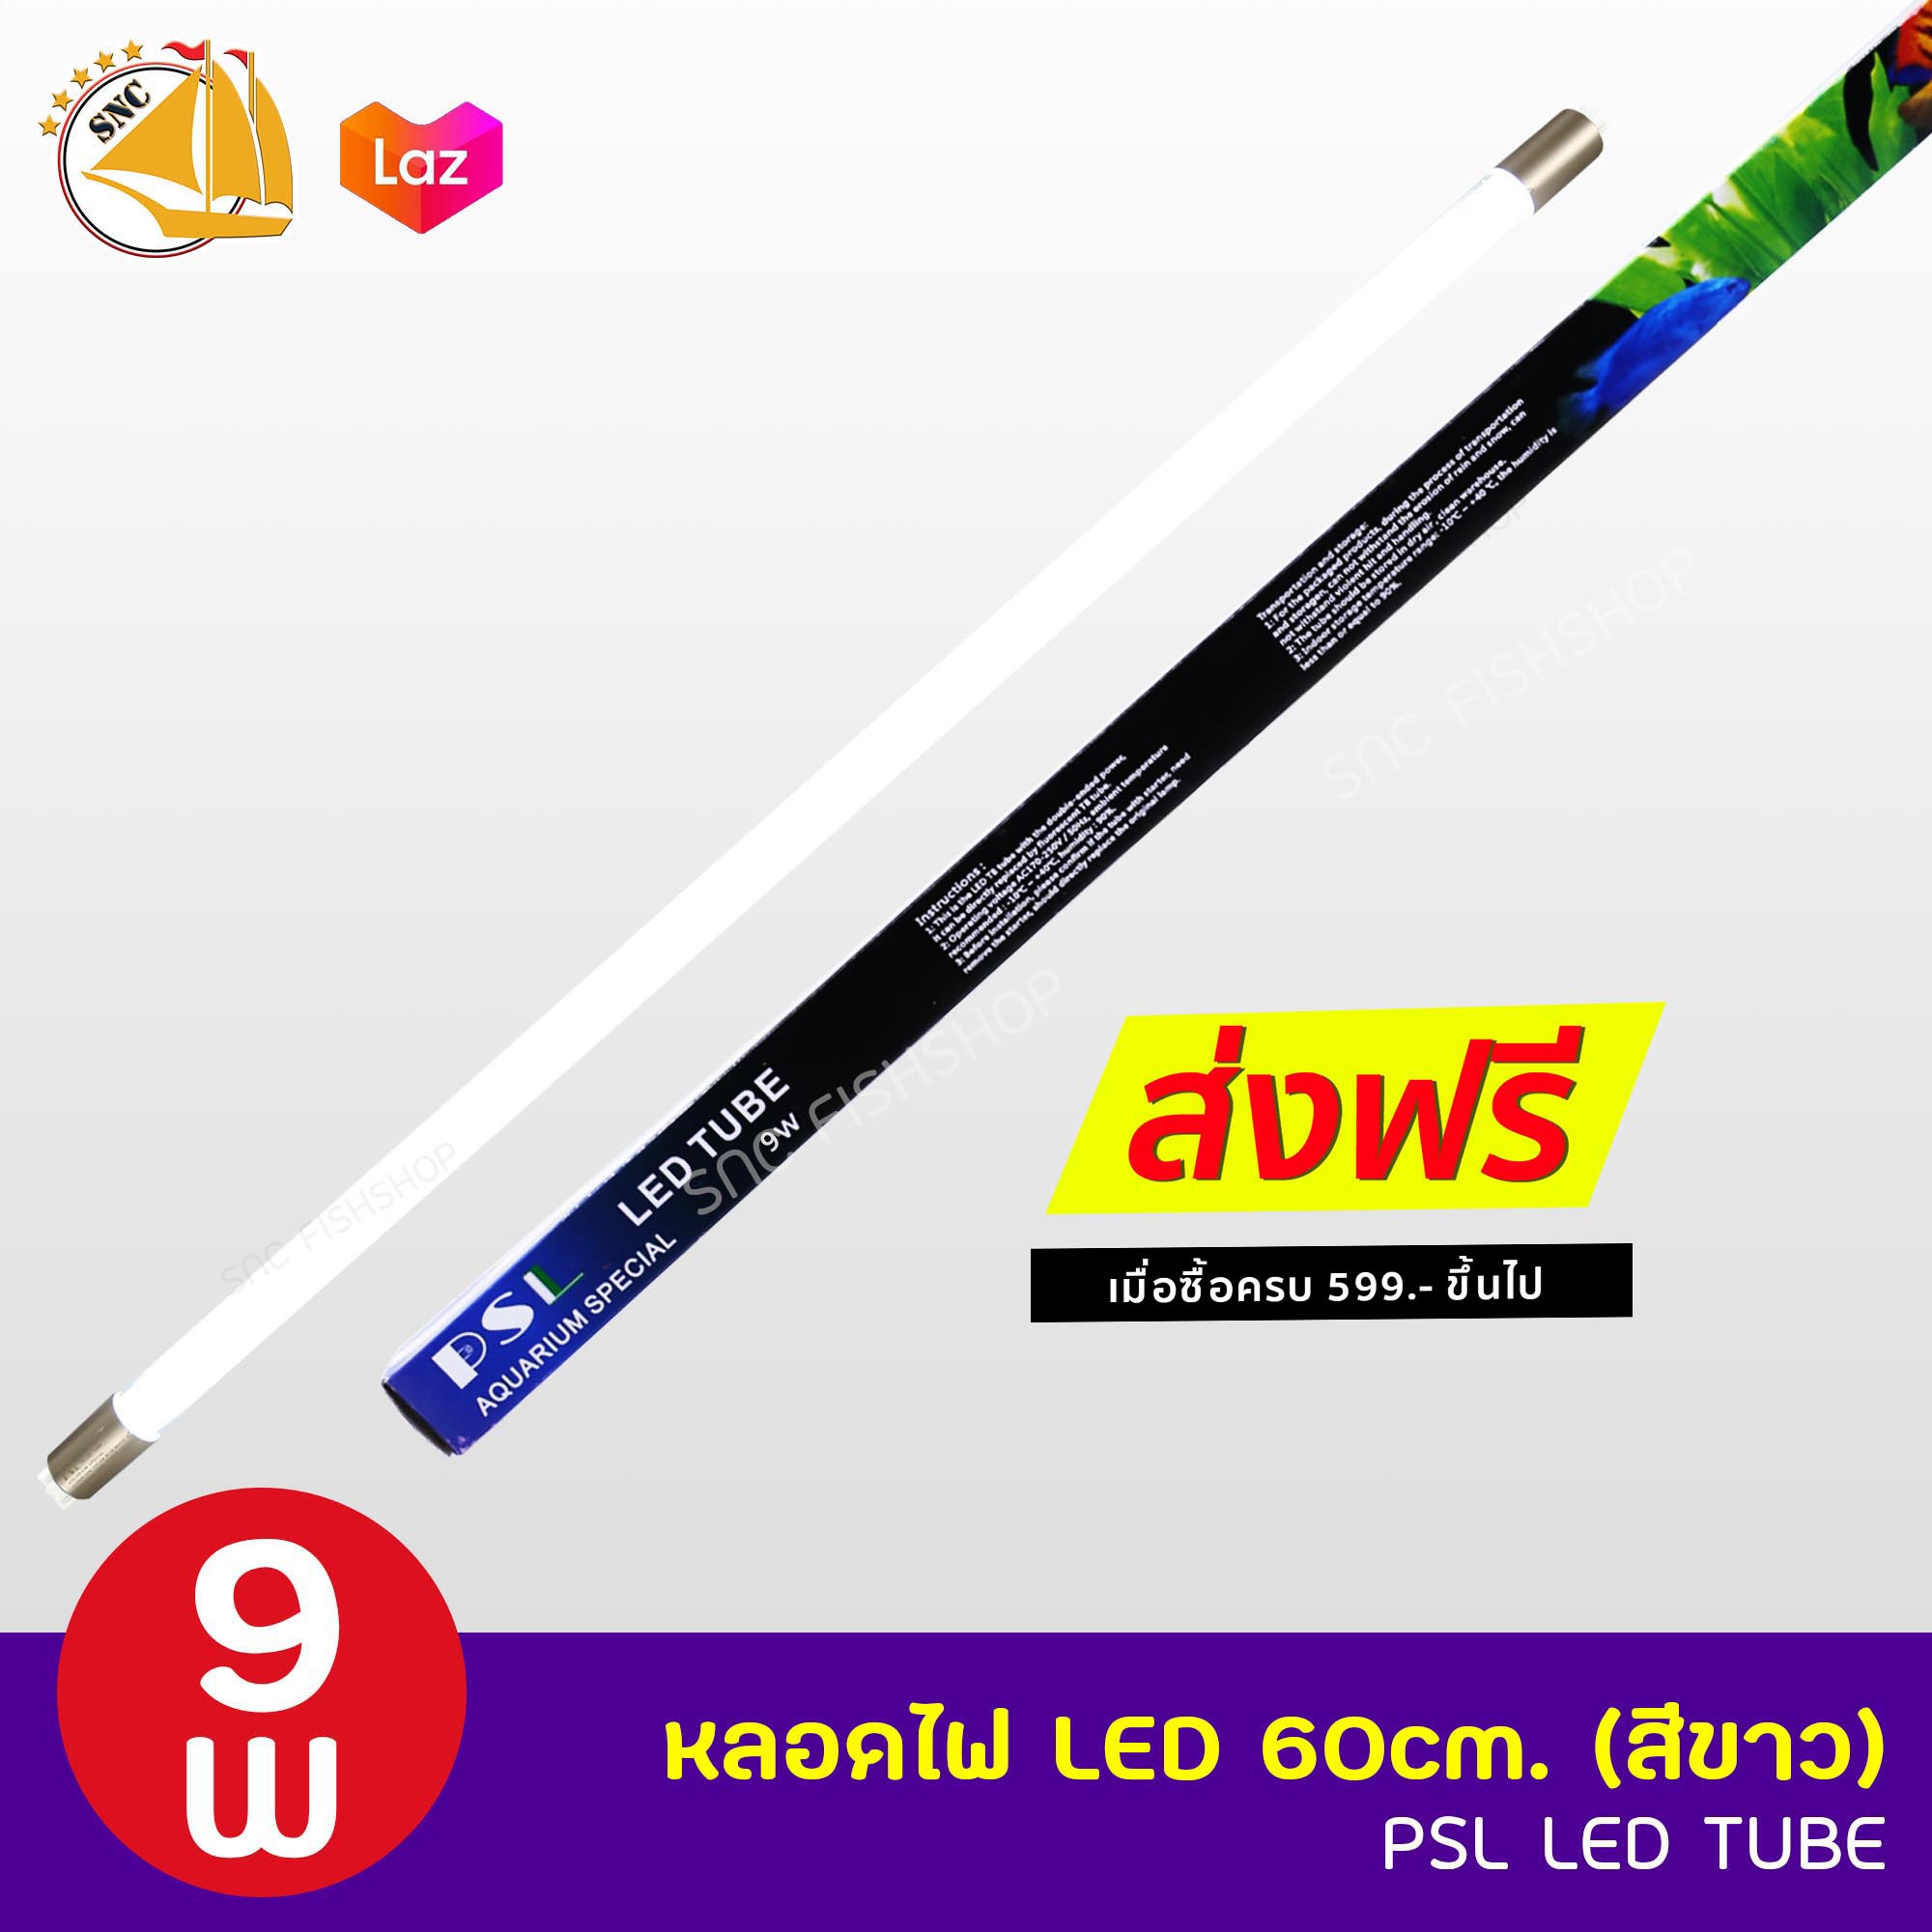 PSL LED TUBE หลอดไฟ LED 60cm. สีขาว ใช้กับราง 30-36 นิ้ว 9W